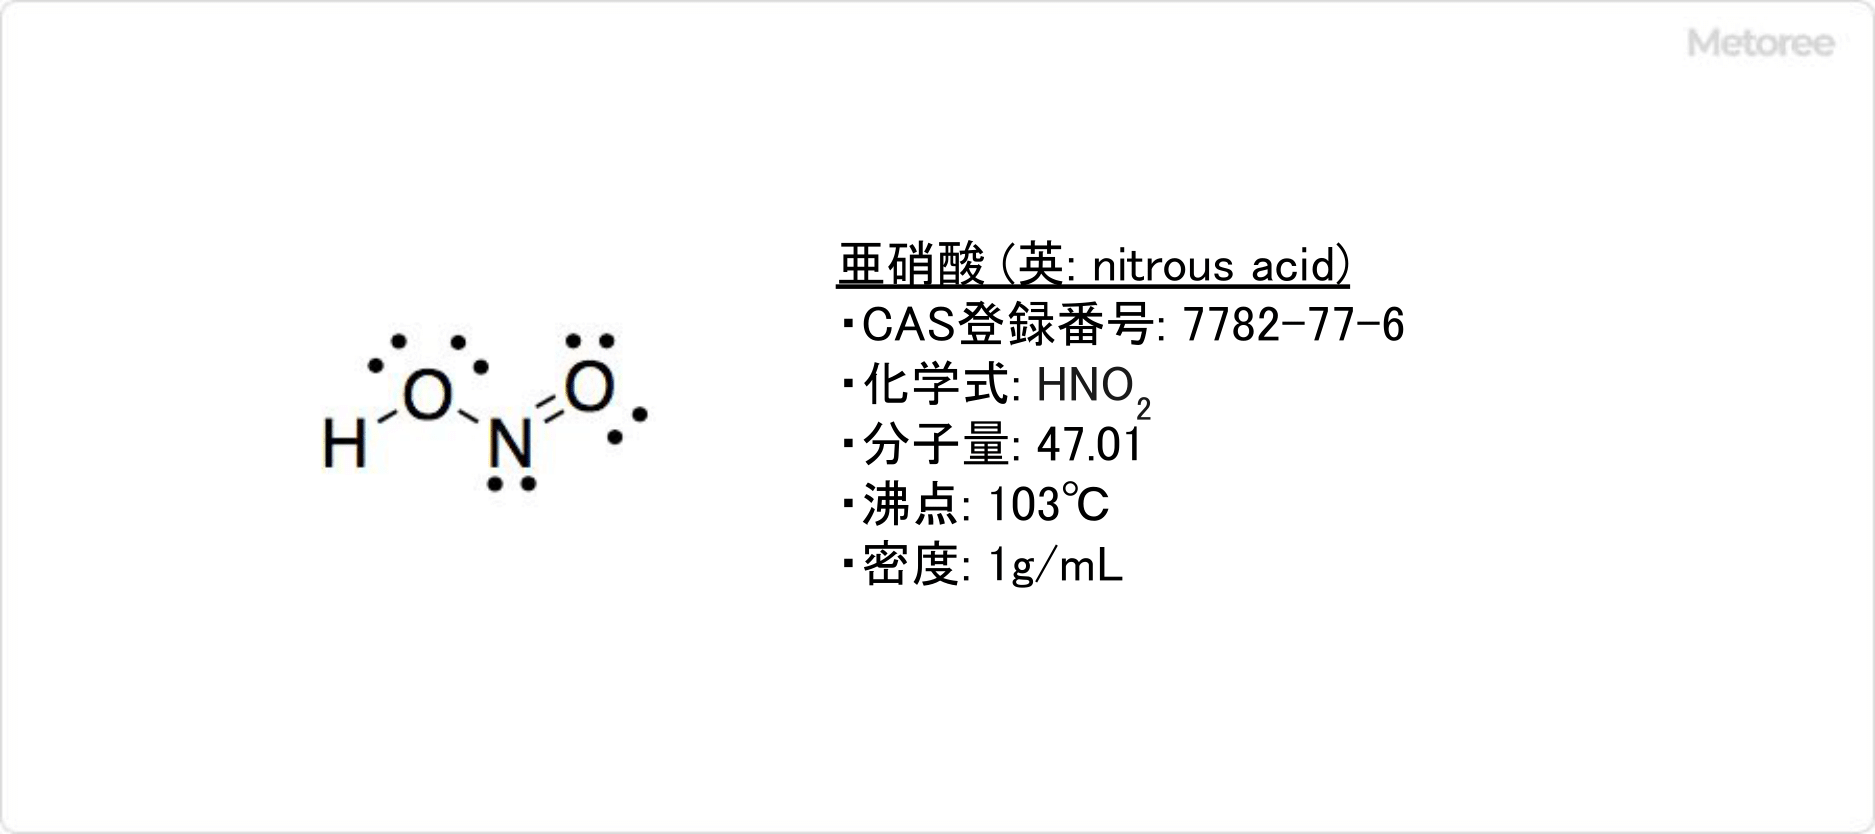 亜硝酸の基本情報